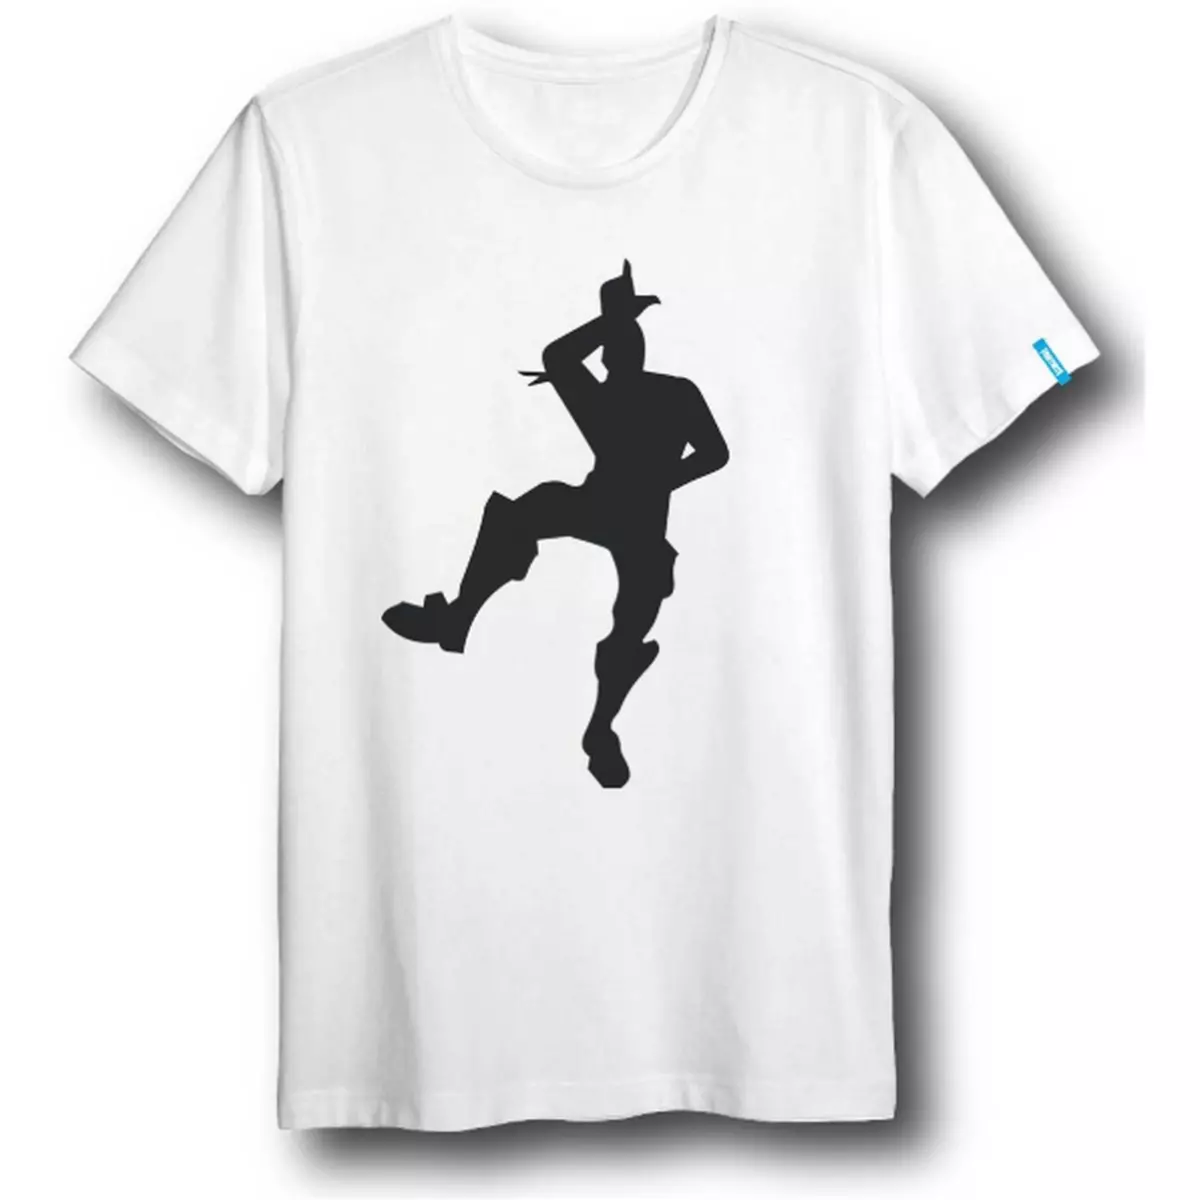 T-shirt Danse Noir sur Blanc Fortnite Taille Enfant 10ans